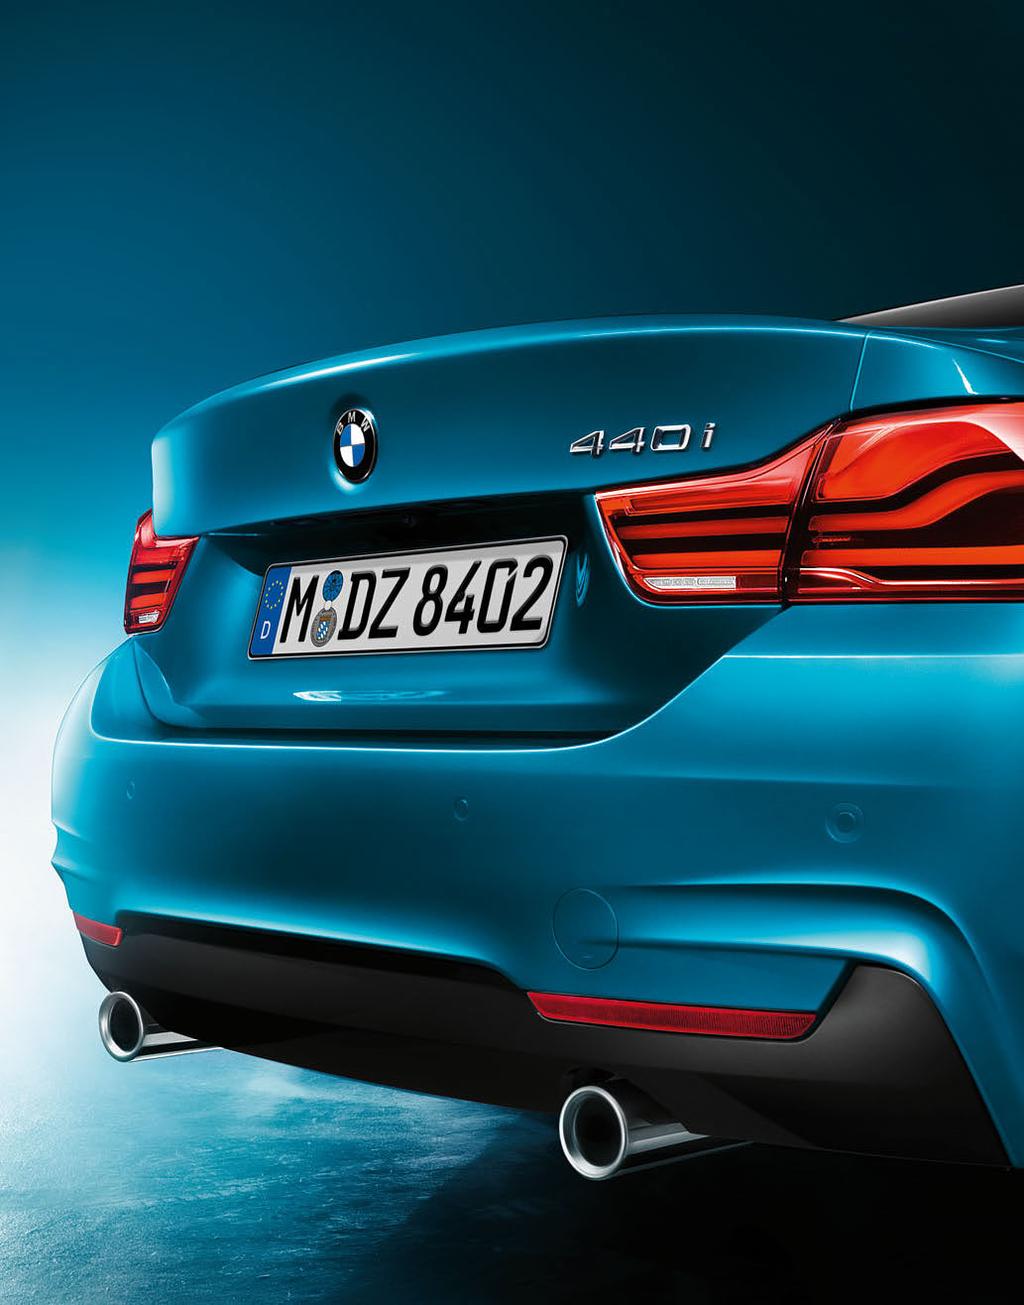 WIĘCEJ WSZYSTKIEGO Bardziej sportowe, bardziej eleganckie. Nowe BMW serii 4 uwodzi zarówno atletycznym charakterem, jak i estetyką.